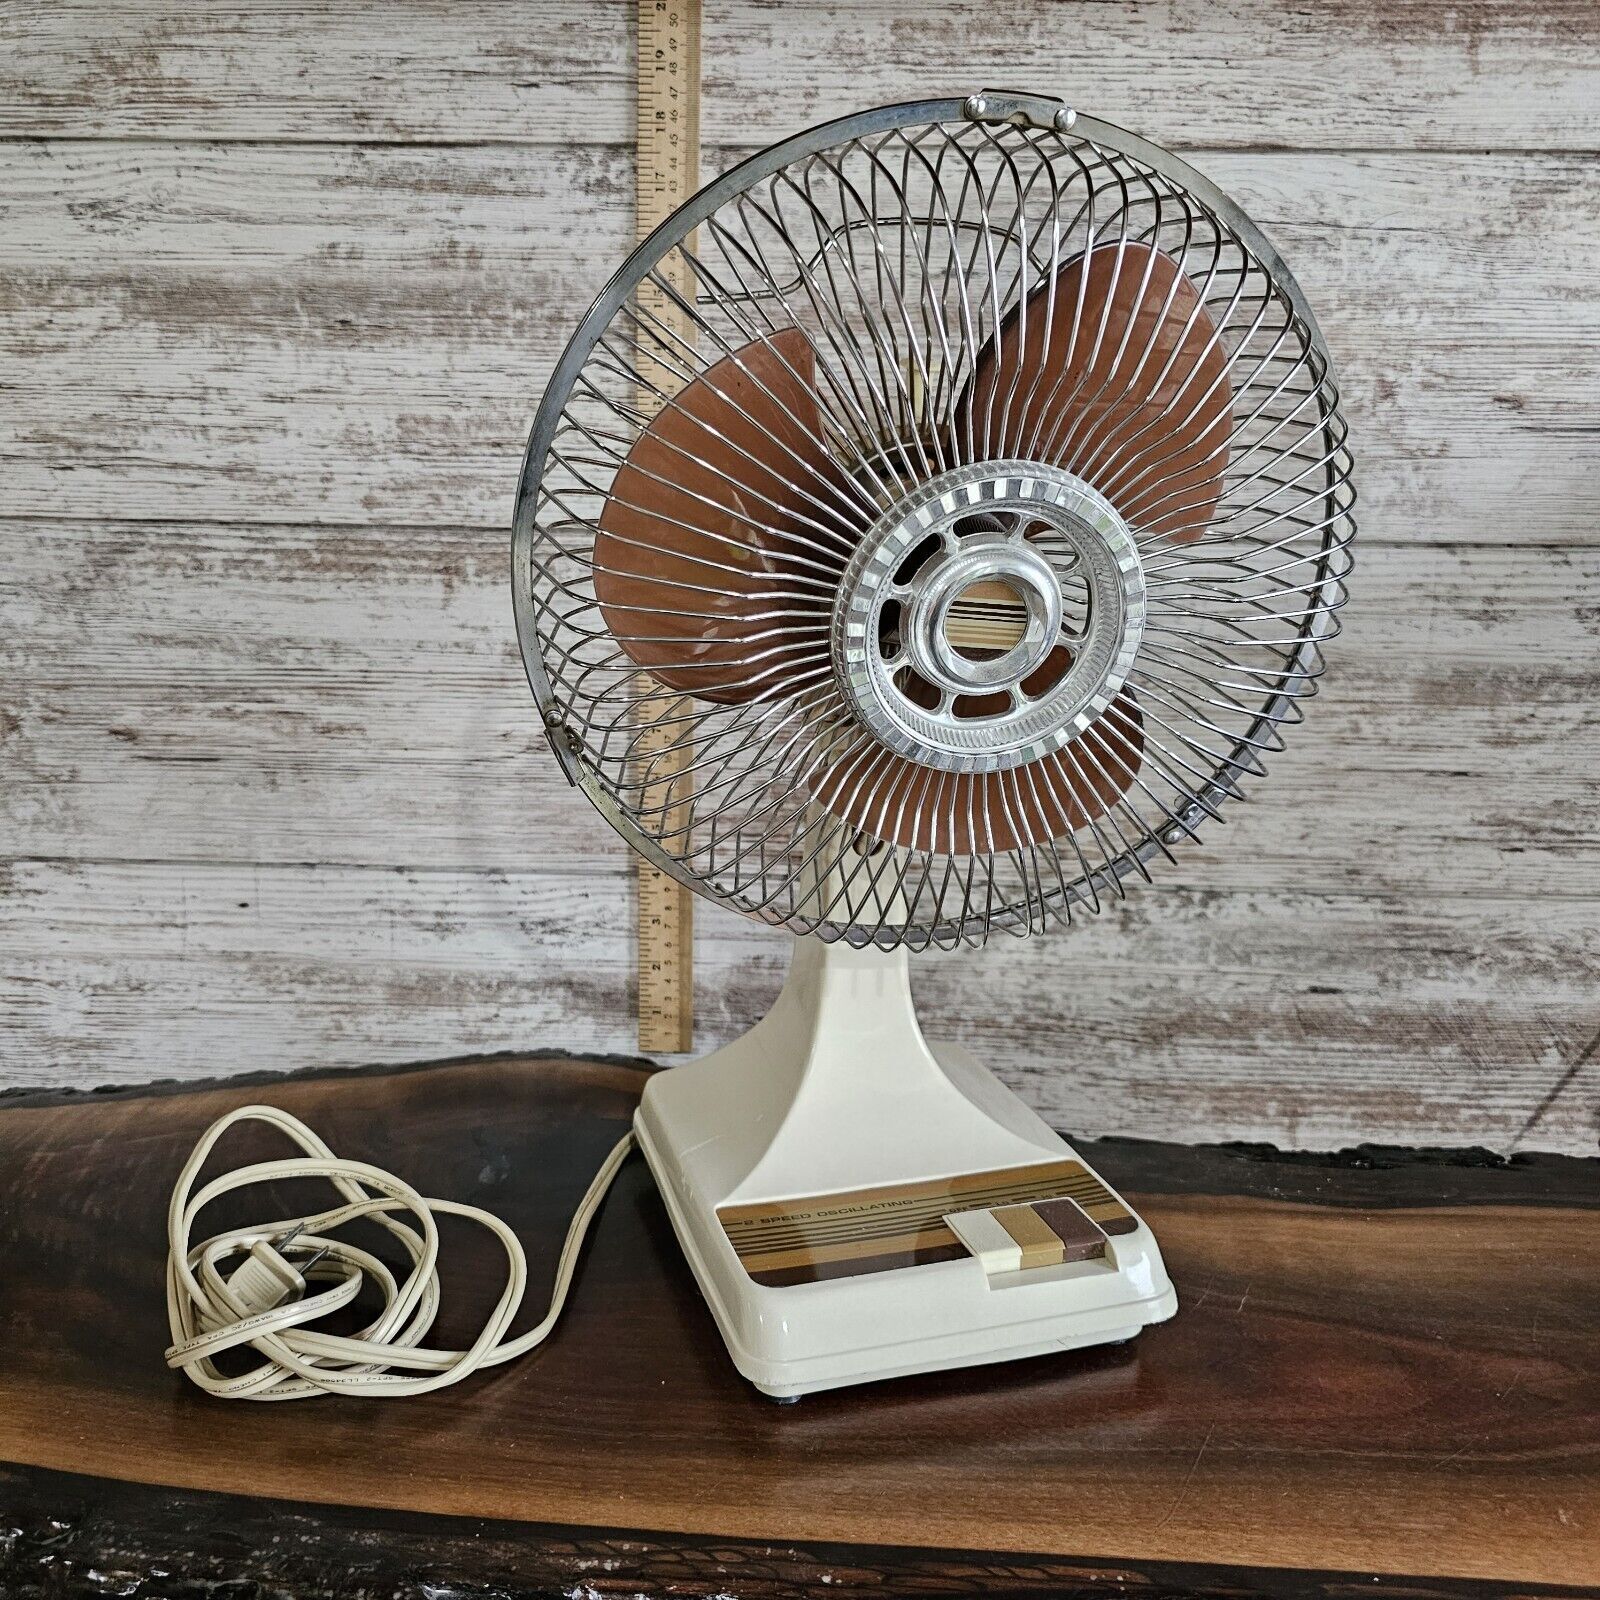 Vintage Stand Fan Tan Brown Model KH-901 9” Oscillating Desk Fan 2 Speed Works